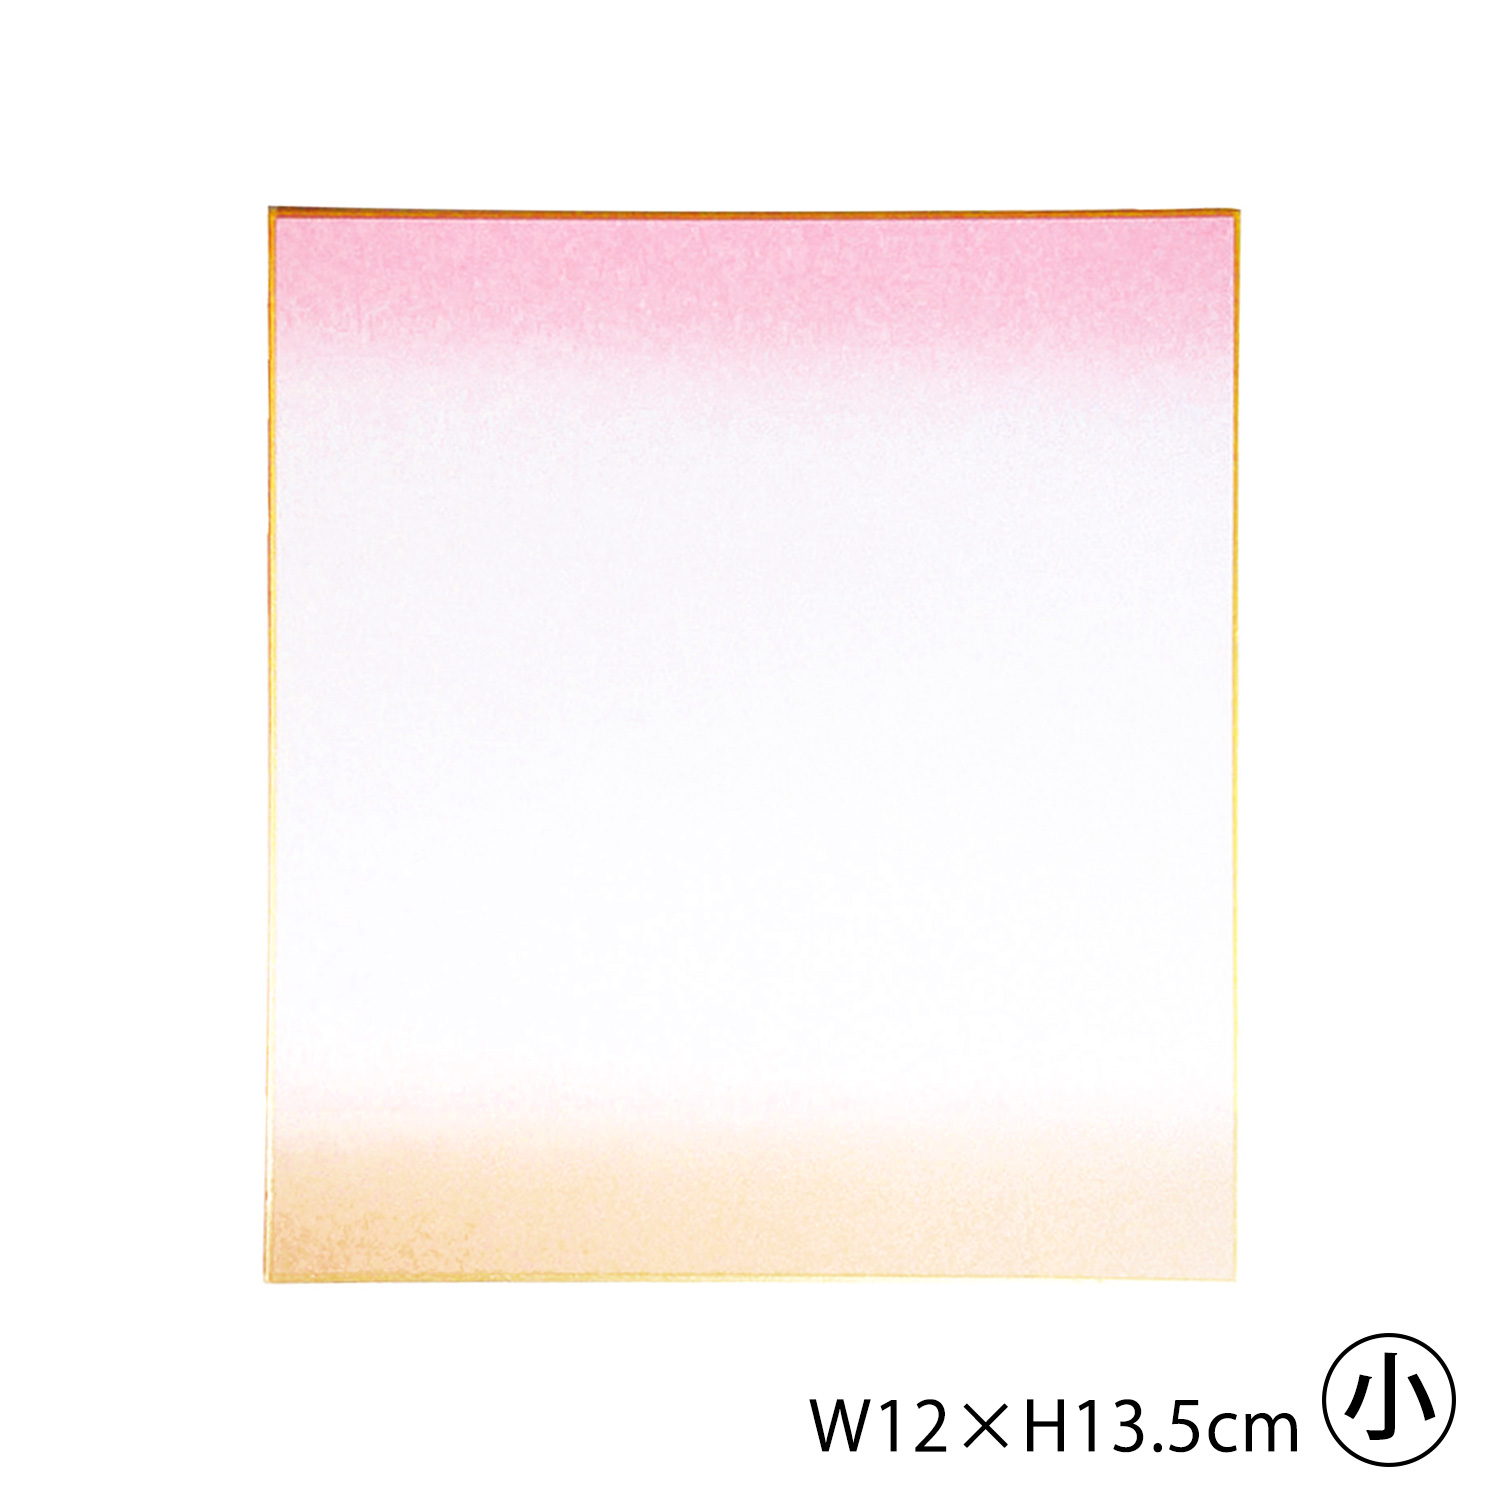 S36-9-P colored paper W12×H13.5cm <pink> (pcs)